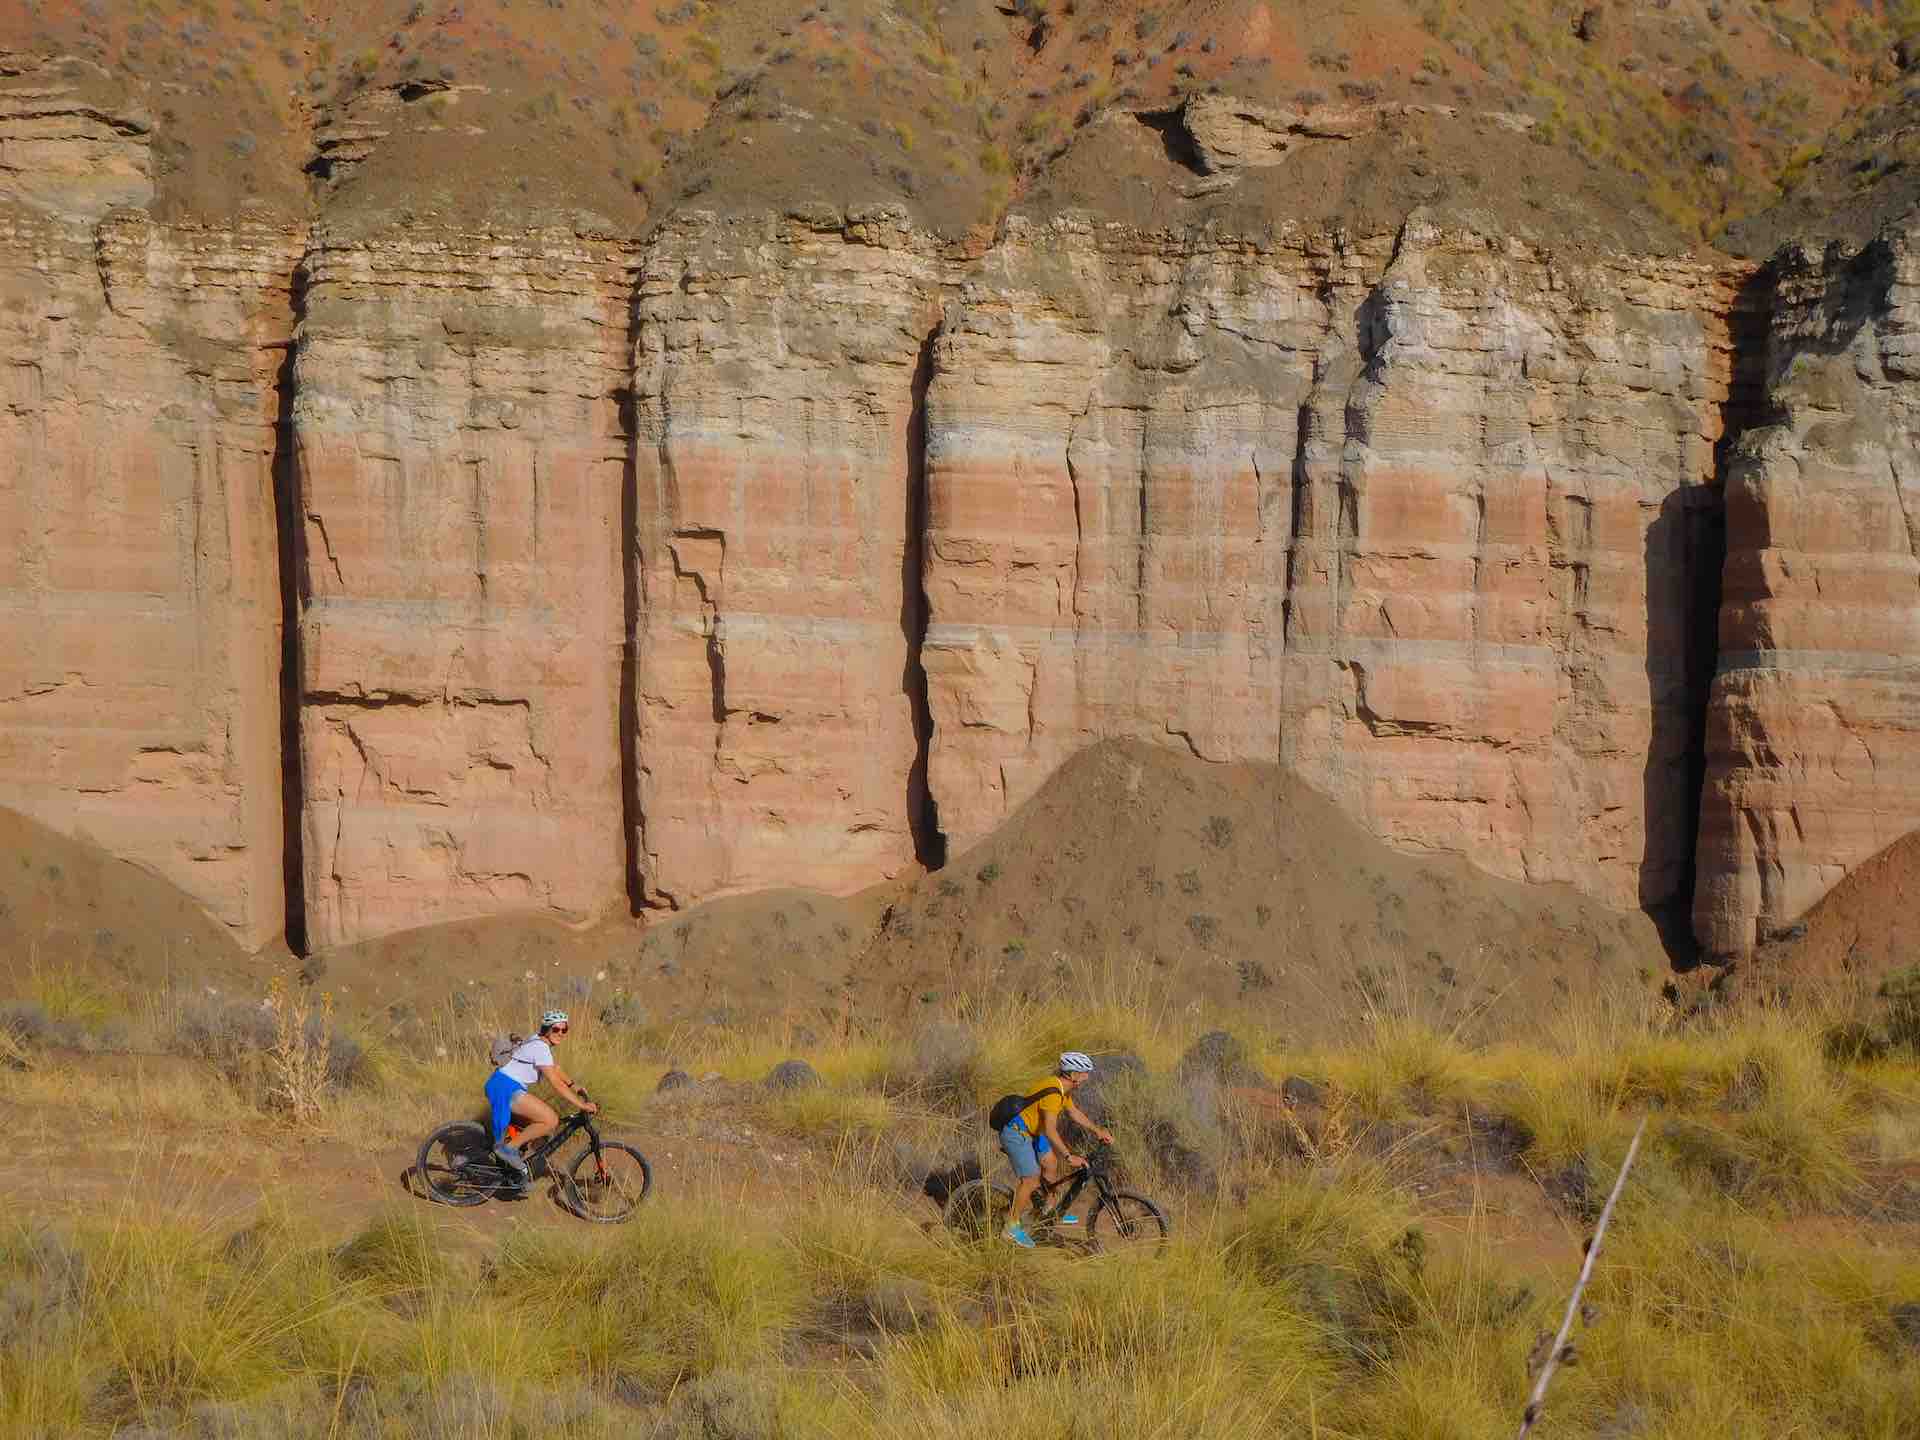 El desierto de Gorafe en bici. Los Coloraos, badlands y farwest en Granada